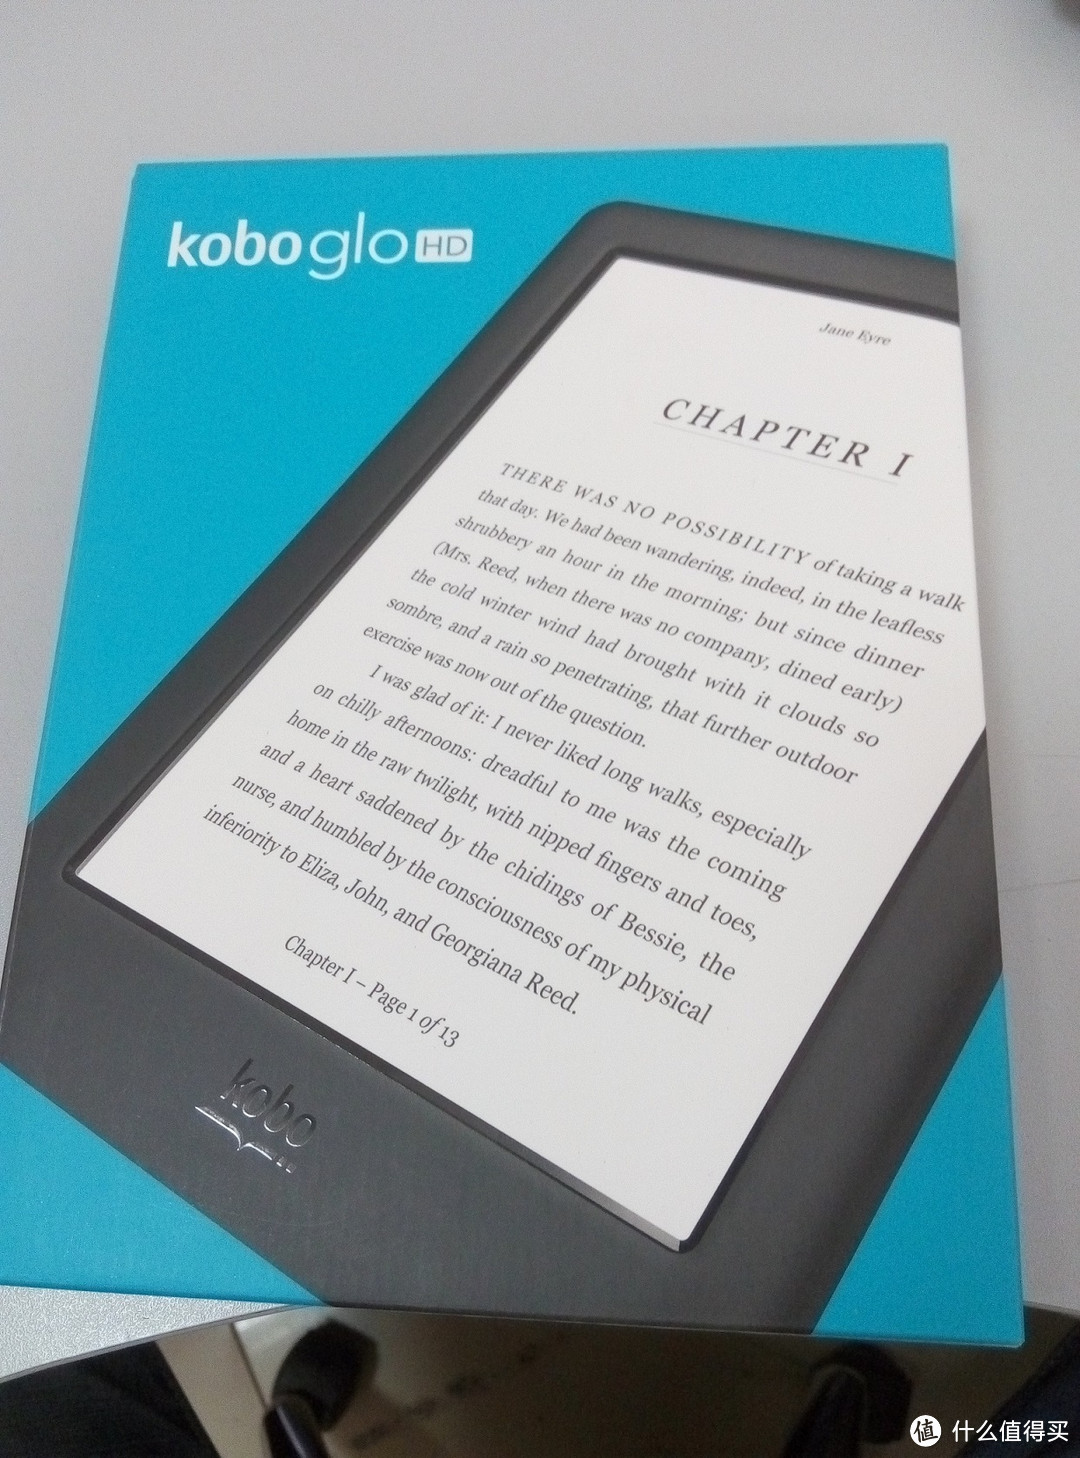 Kobo glo HD 电子书阅读器海淘经历及开箱简评